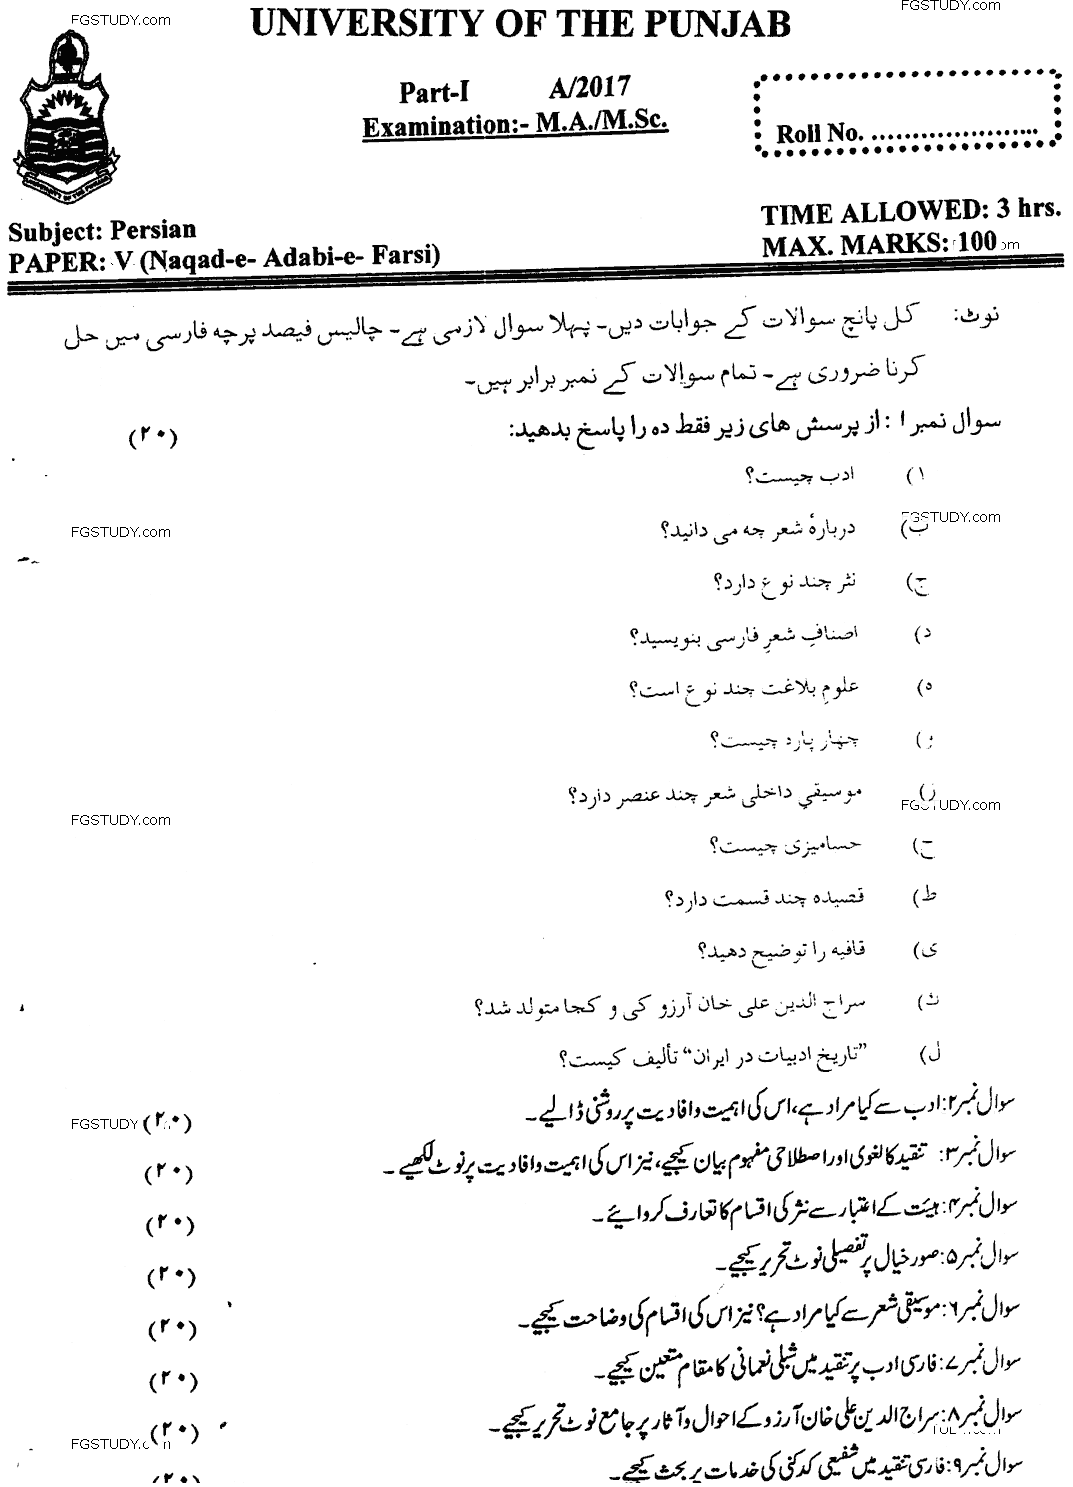 Ma Part 1 Persian Naqad E Adebi E Farsi Past Paper 2017 Punjab University